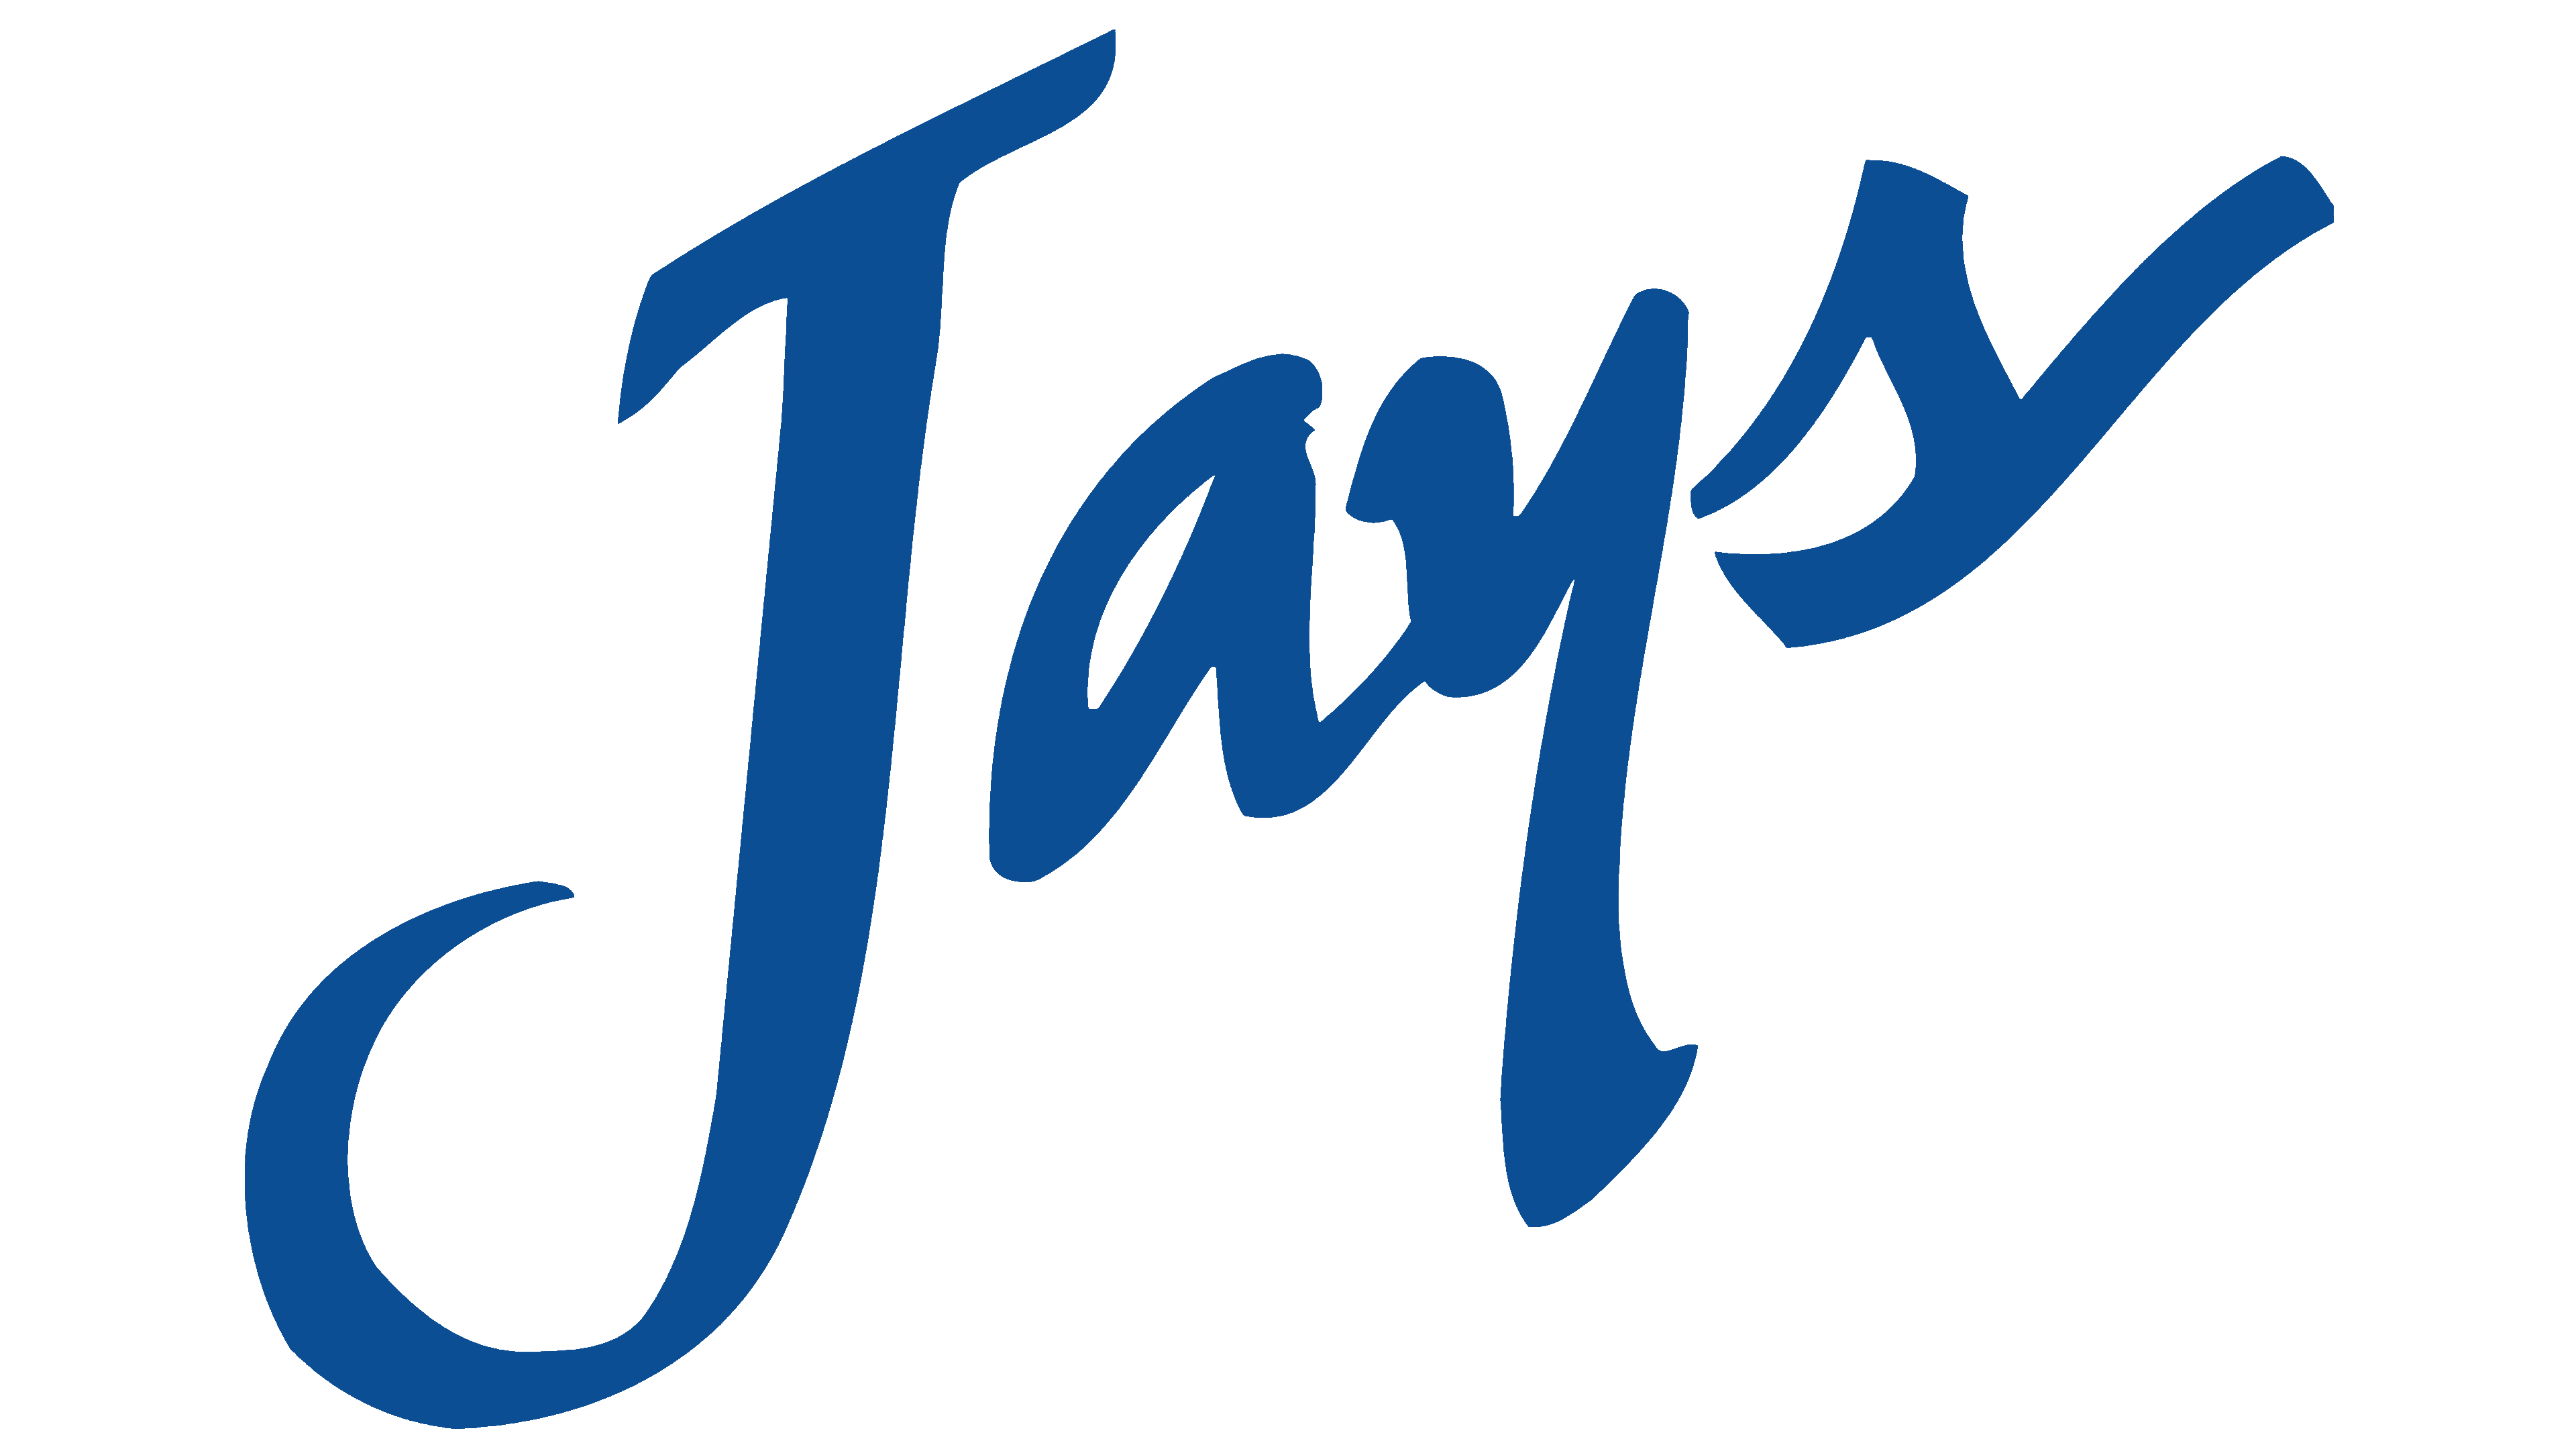 Blue Jays Logo Transparent Images